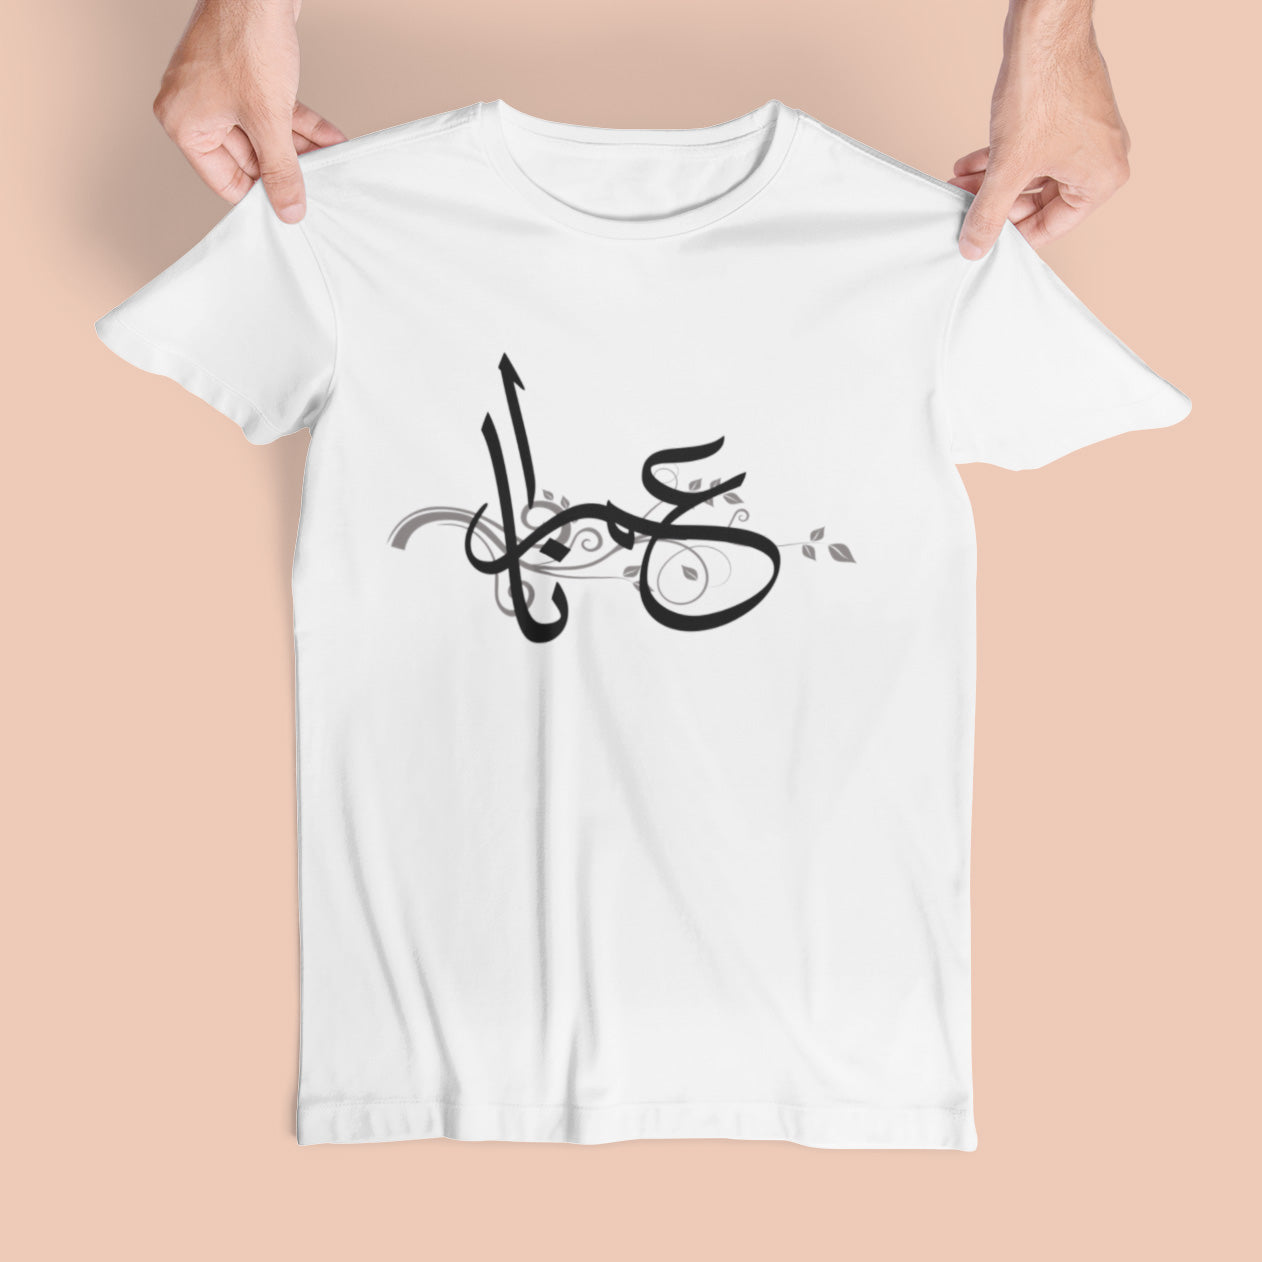 Imrana - T-shirt Calligraphie Arabe